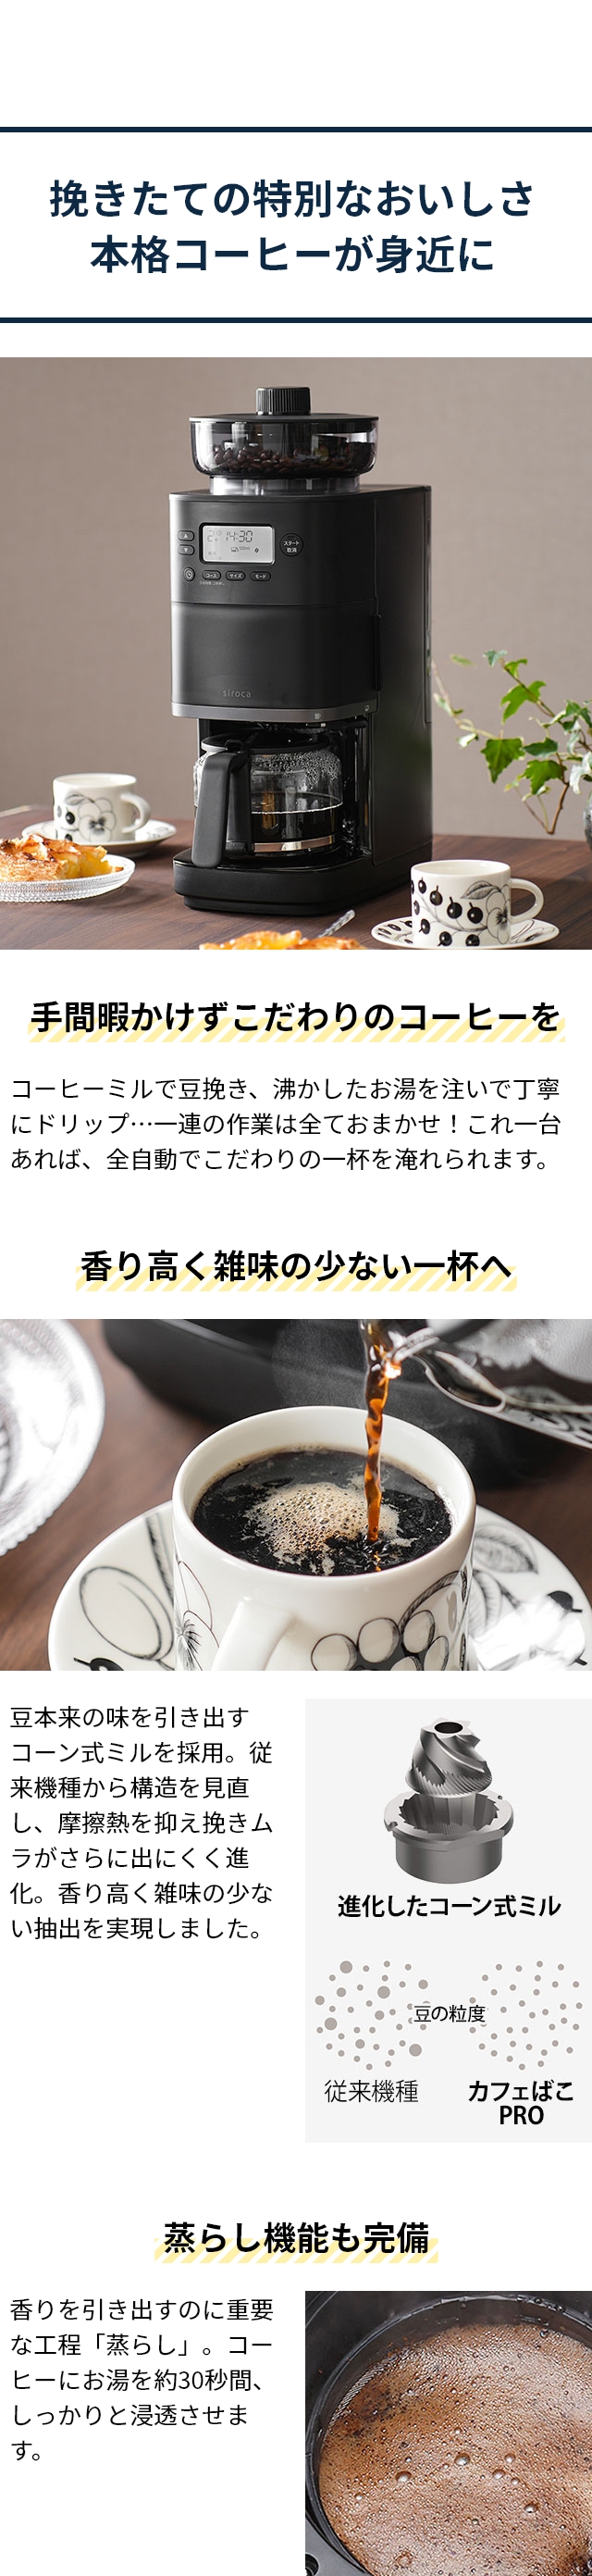 シロカ 【4つから選べる2大特典】 全自動コーヒーメーカー コーン式全